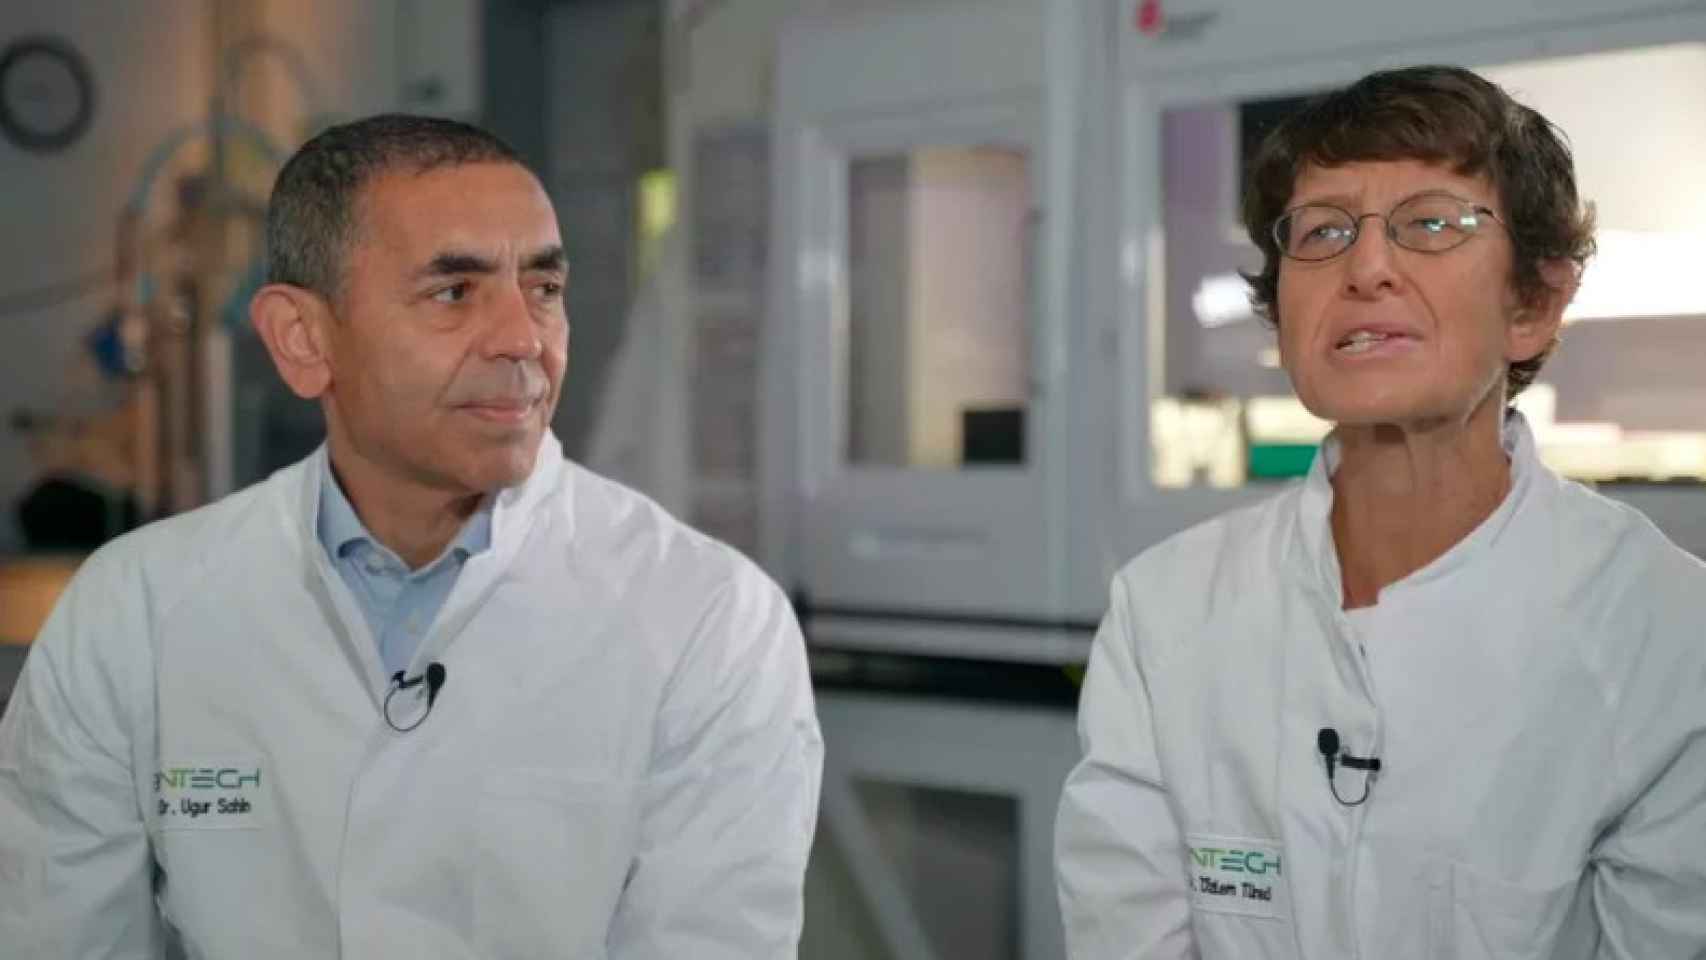 Uğur Şahin y Özlem Türeci, investigadores y fundadores de BioNTech, durante su entrevista en la cadena británica 'BBC'.